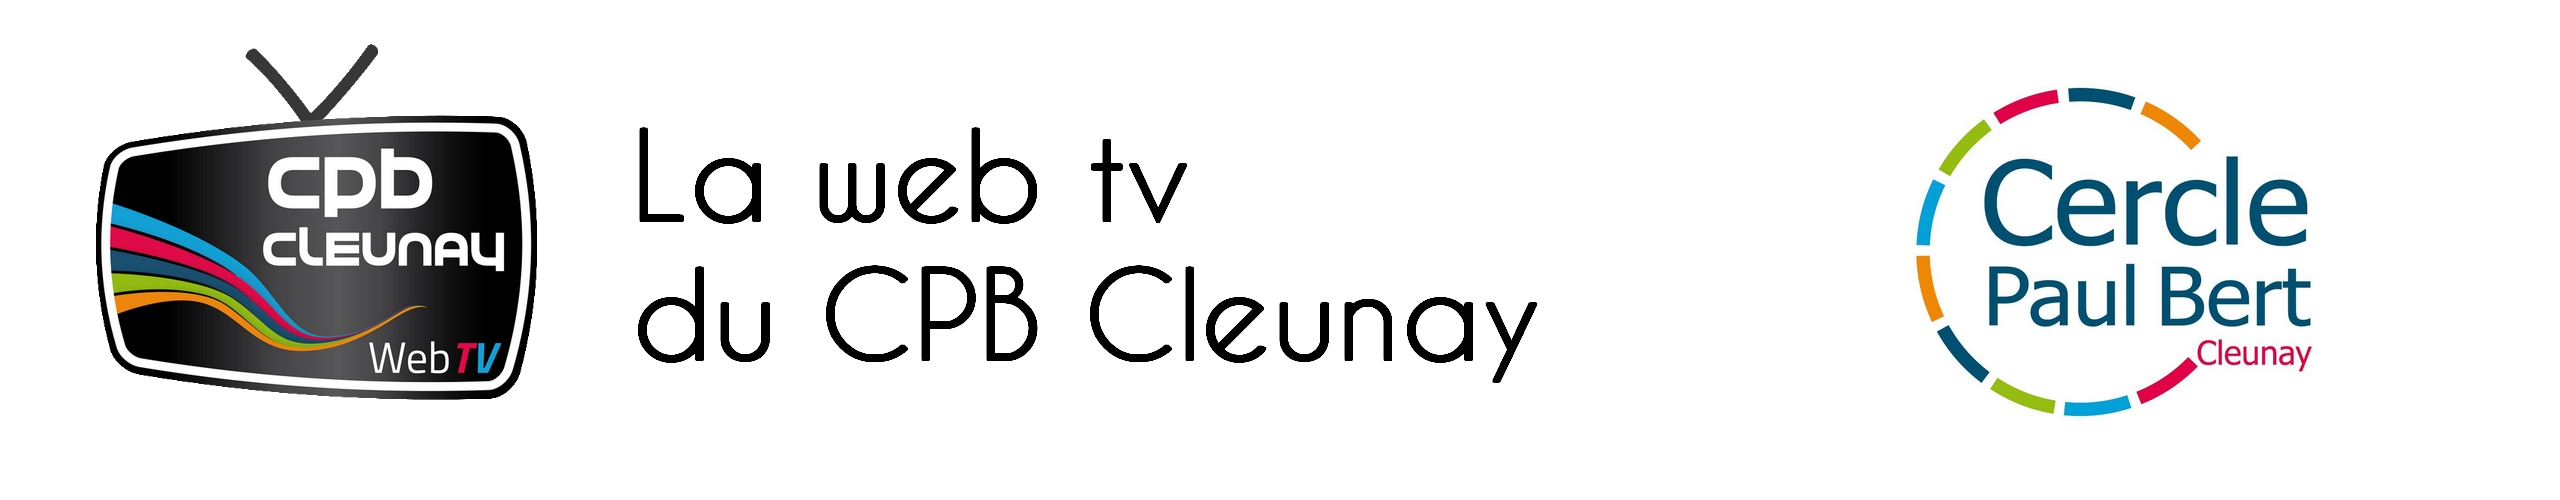 La web tv du Cercle Paul Bert Cleunay